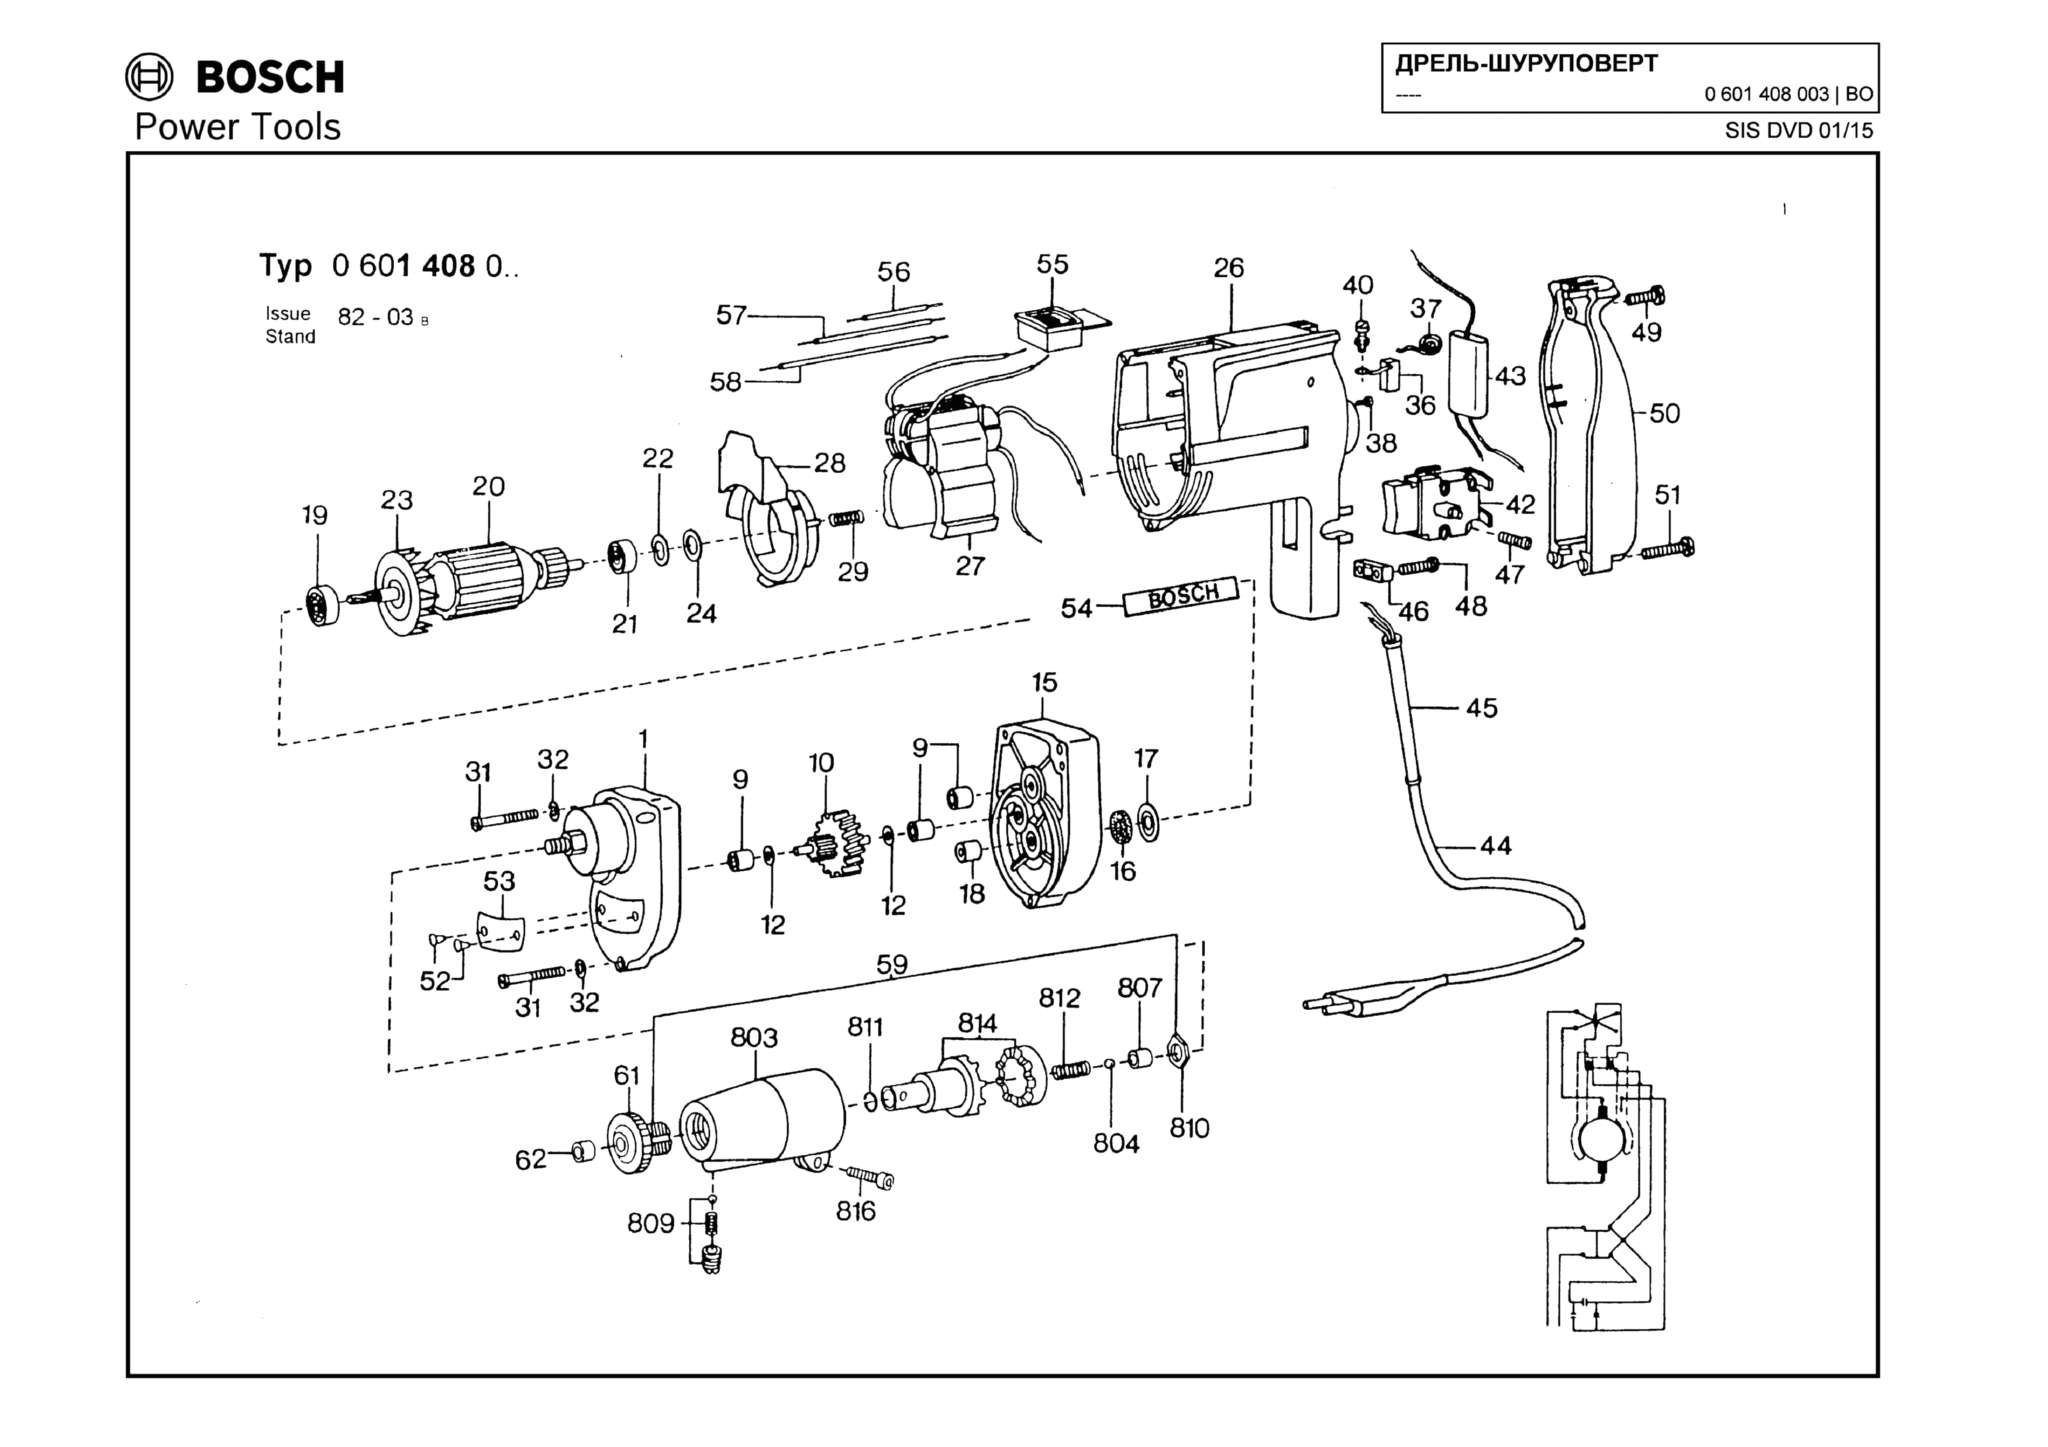 Запчасти, схема и деталировка Bosch (ТИП 0601408003)